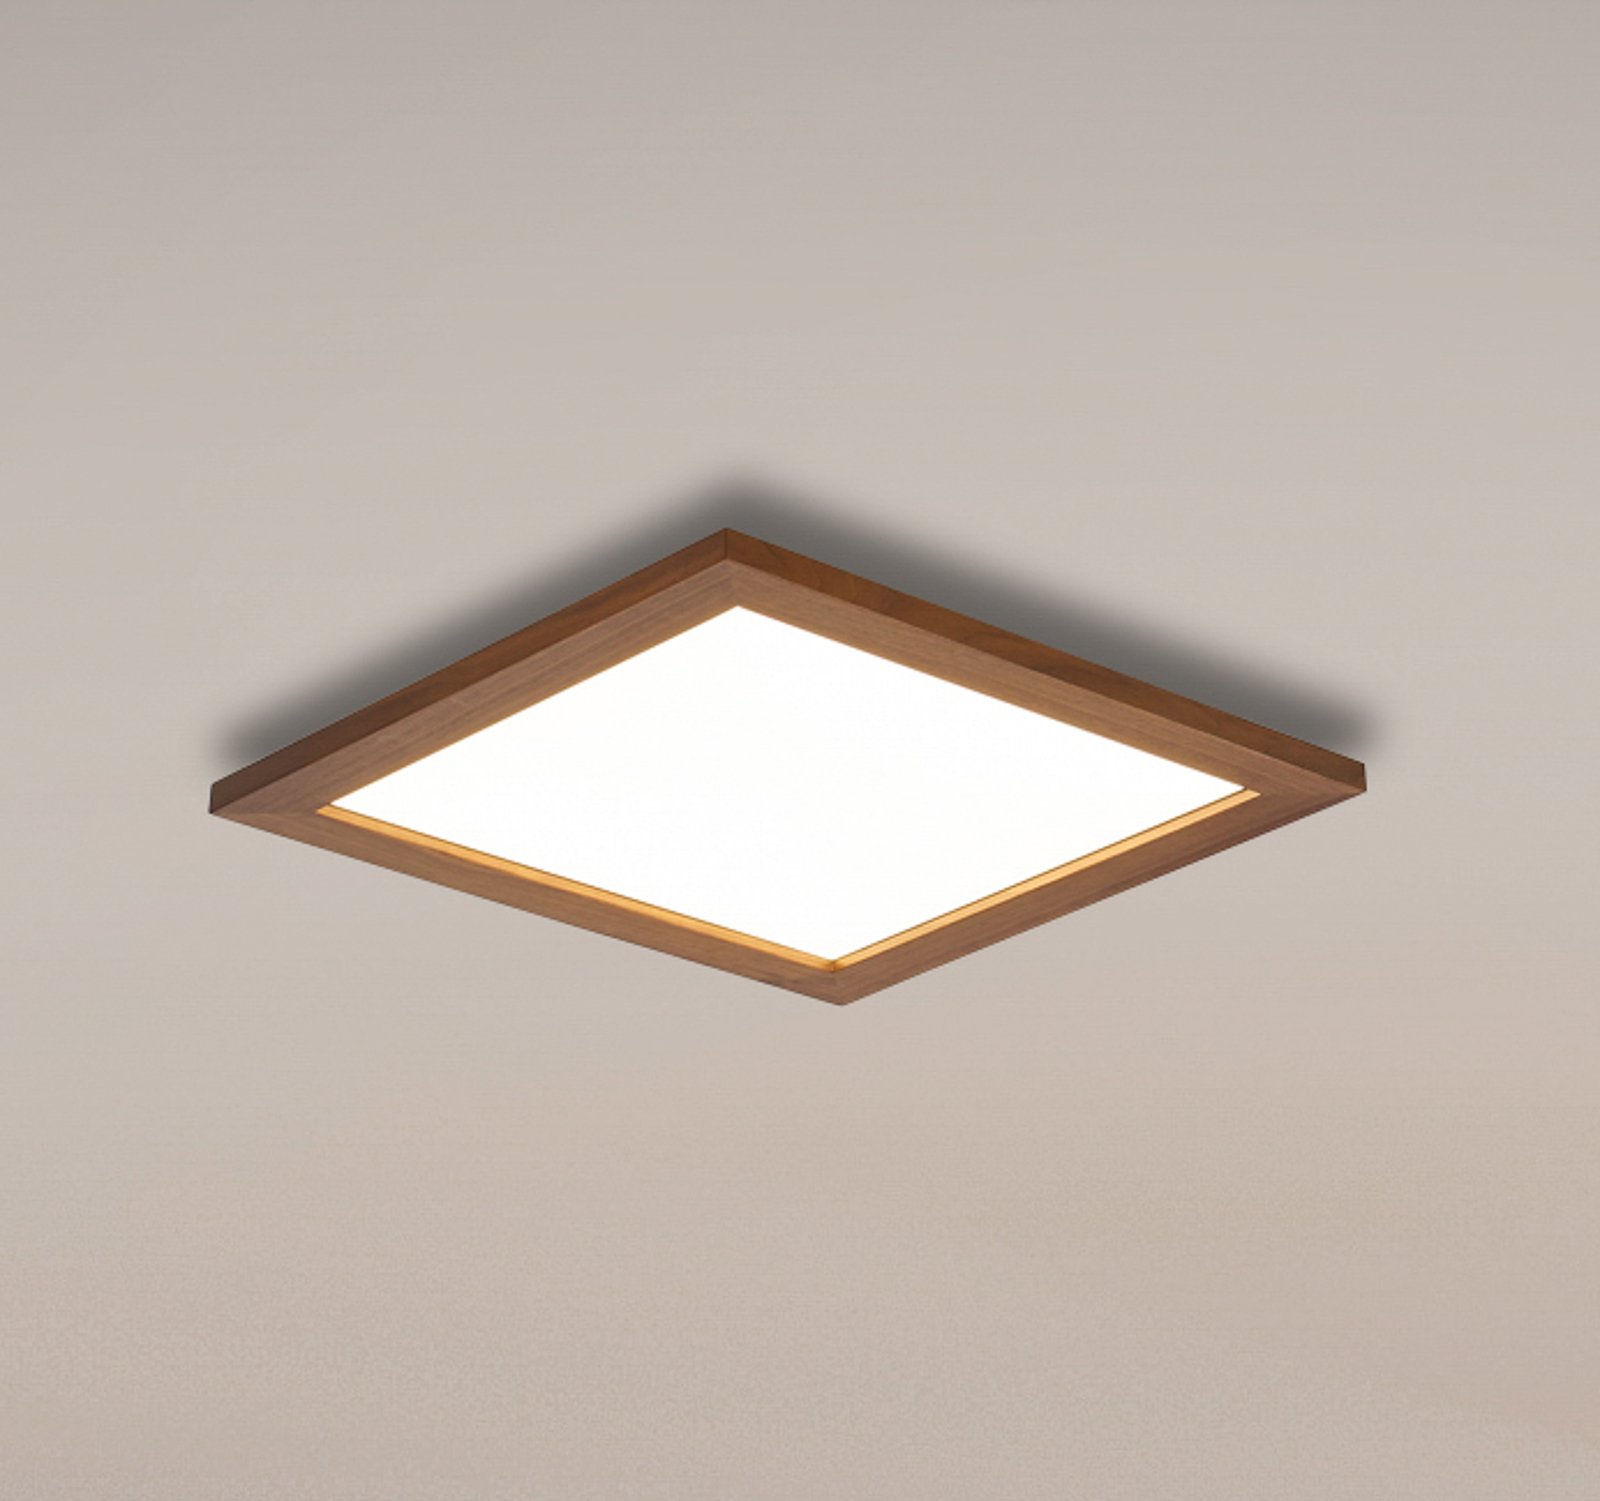 Quitani Aurinor LED panel, orech, 45 cm